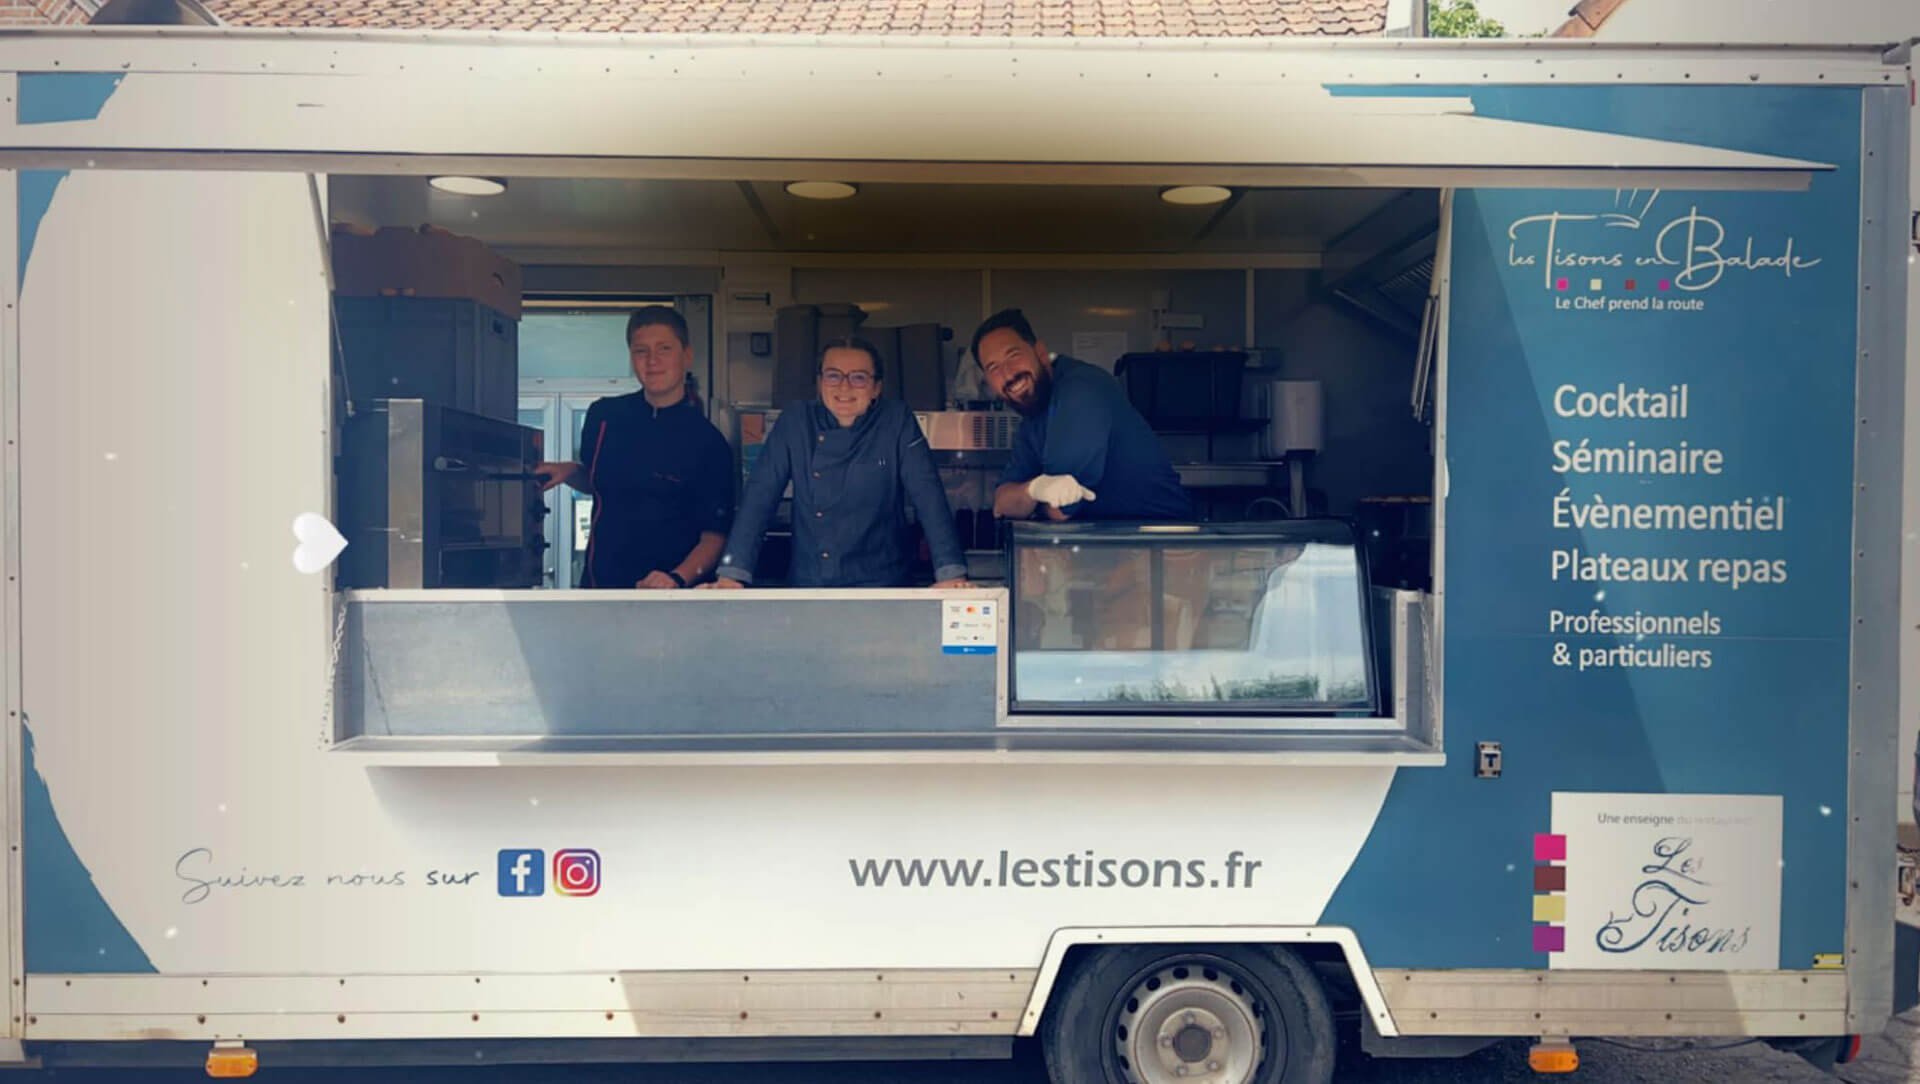 Food truck Les Tisons en balade, camion restaurant bistronomique